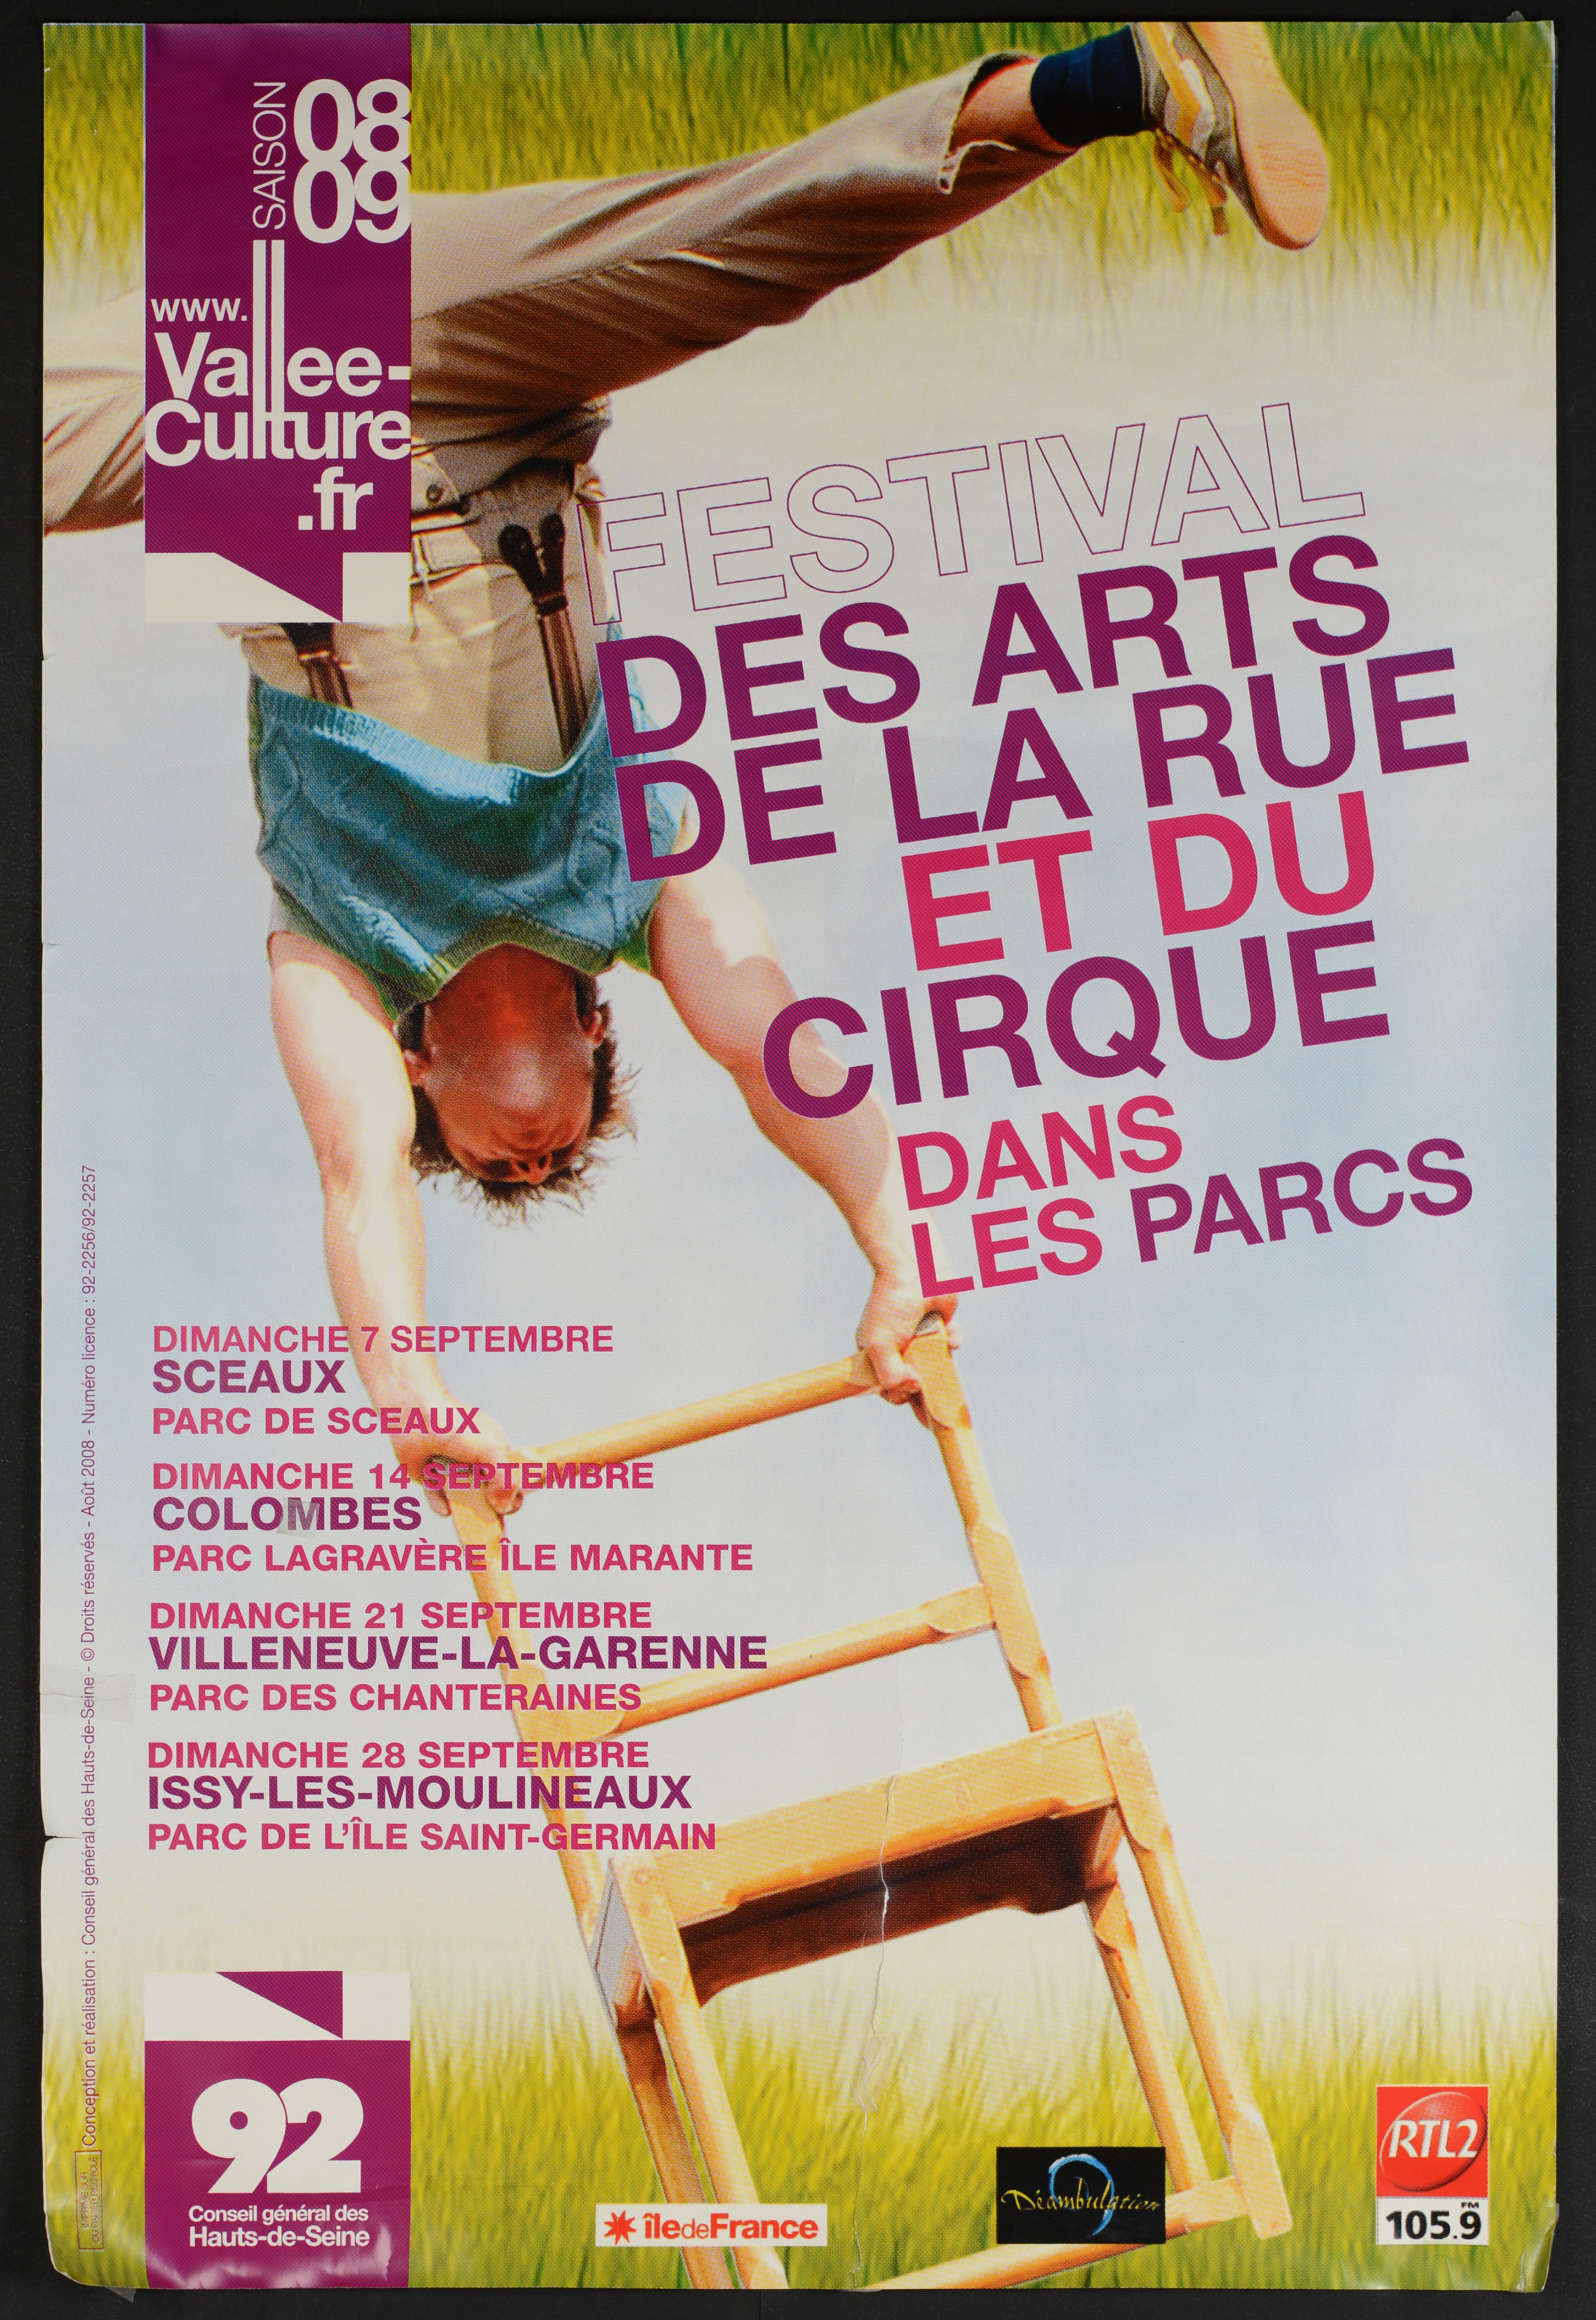 Vallée Culture saison 08-09. Festival des arts de la rue et du cirque dans les parcs. 6-28 septembre. - CG 92, 2008. - 1 affiche ill. coul., 80 x 120 cm.